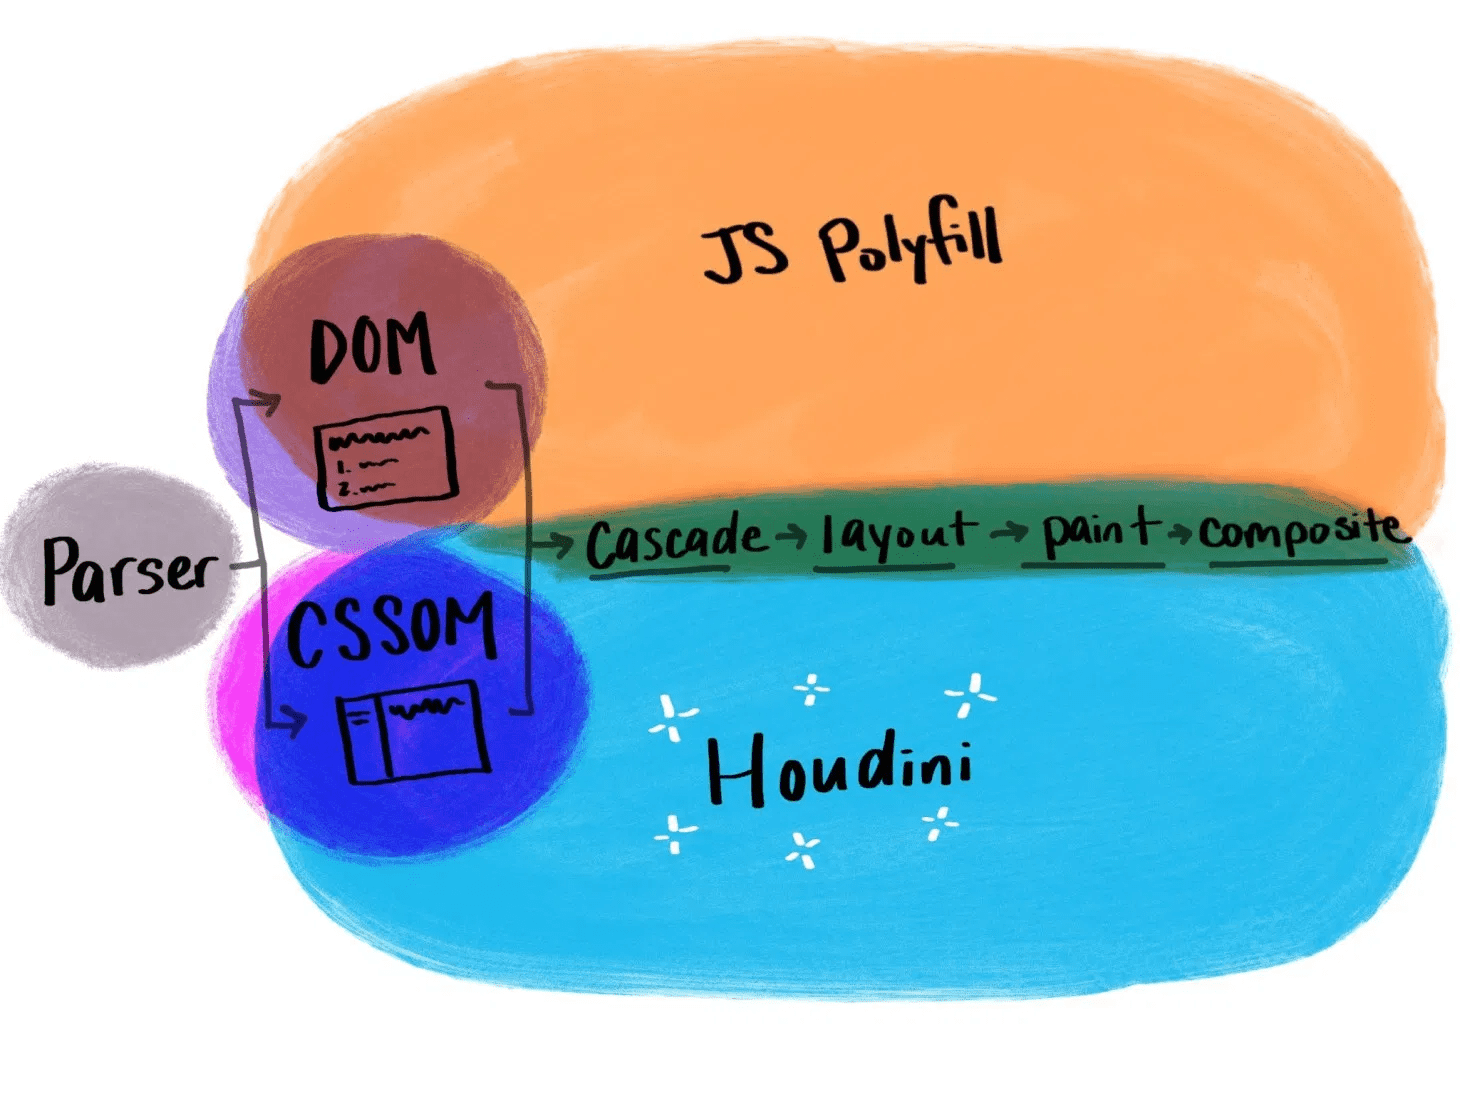 Illustrazione che mostra il funzionamento di Houdini rispetto ai polyfill JavaScript tradizionali.